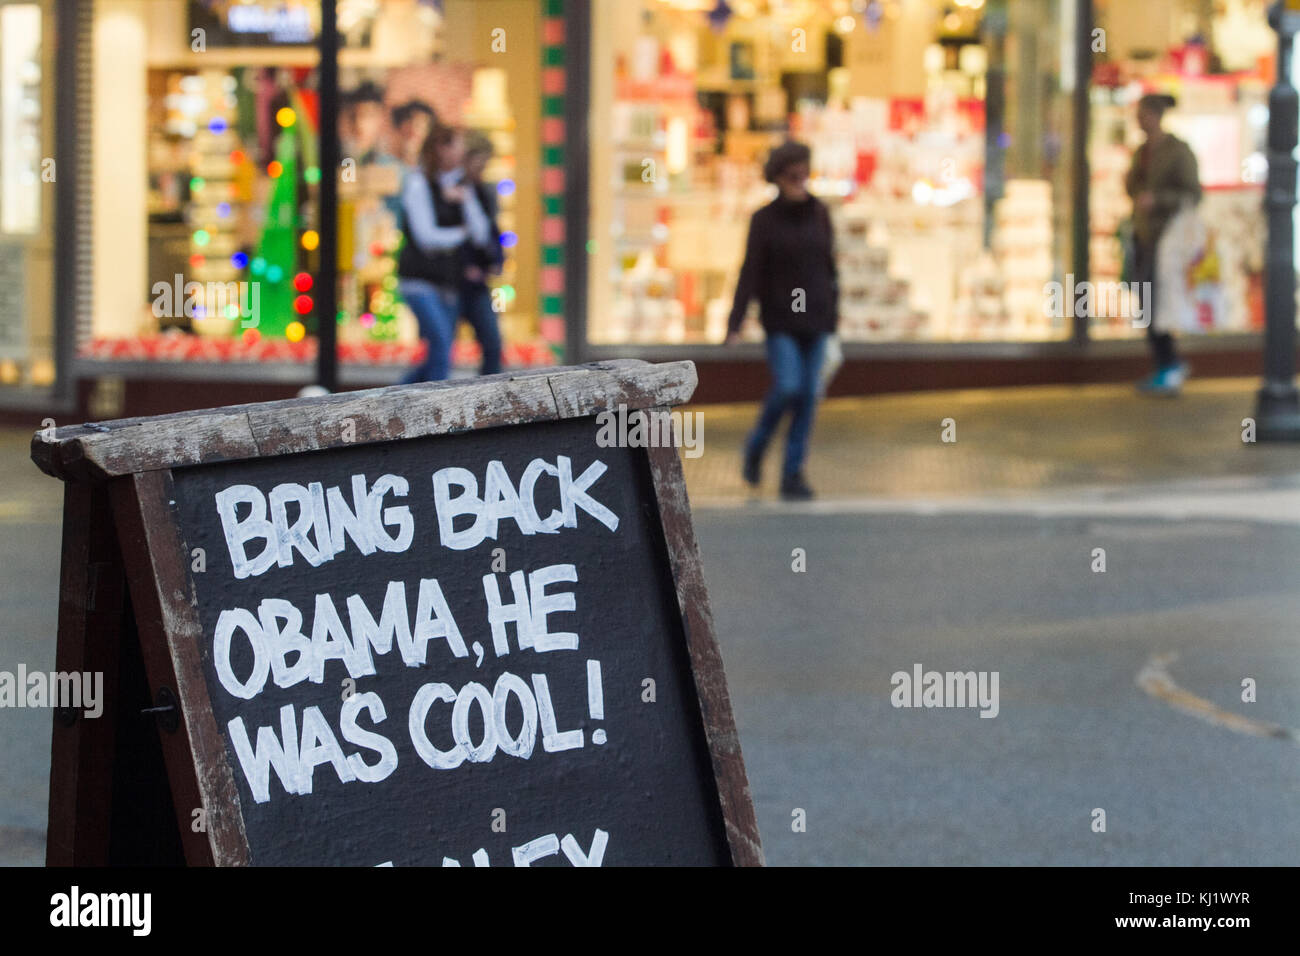 London uk. 20 novembre 2017. un pub à l'extérieur asigne wimbledon indique 'ramener obama il était cool" en Reference (référence à l'ancien président des États-Unis, Barack Obama, qui a quitté ses fonctions en janvier 2017 après 2 trimestres crédit : amer ghazzal/Alamy live news Banque D'Images